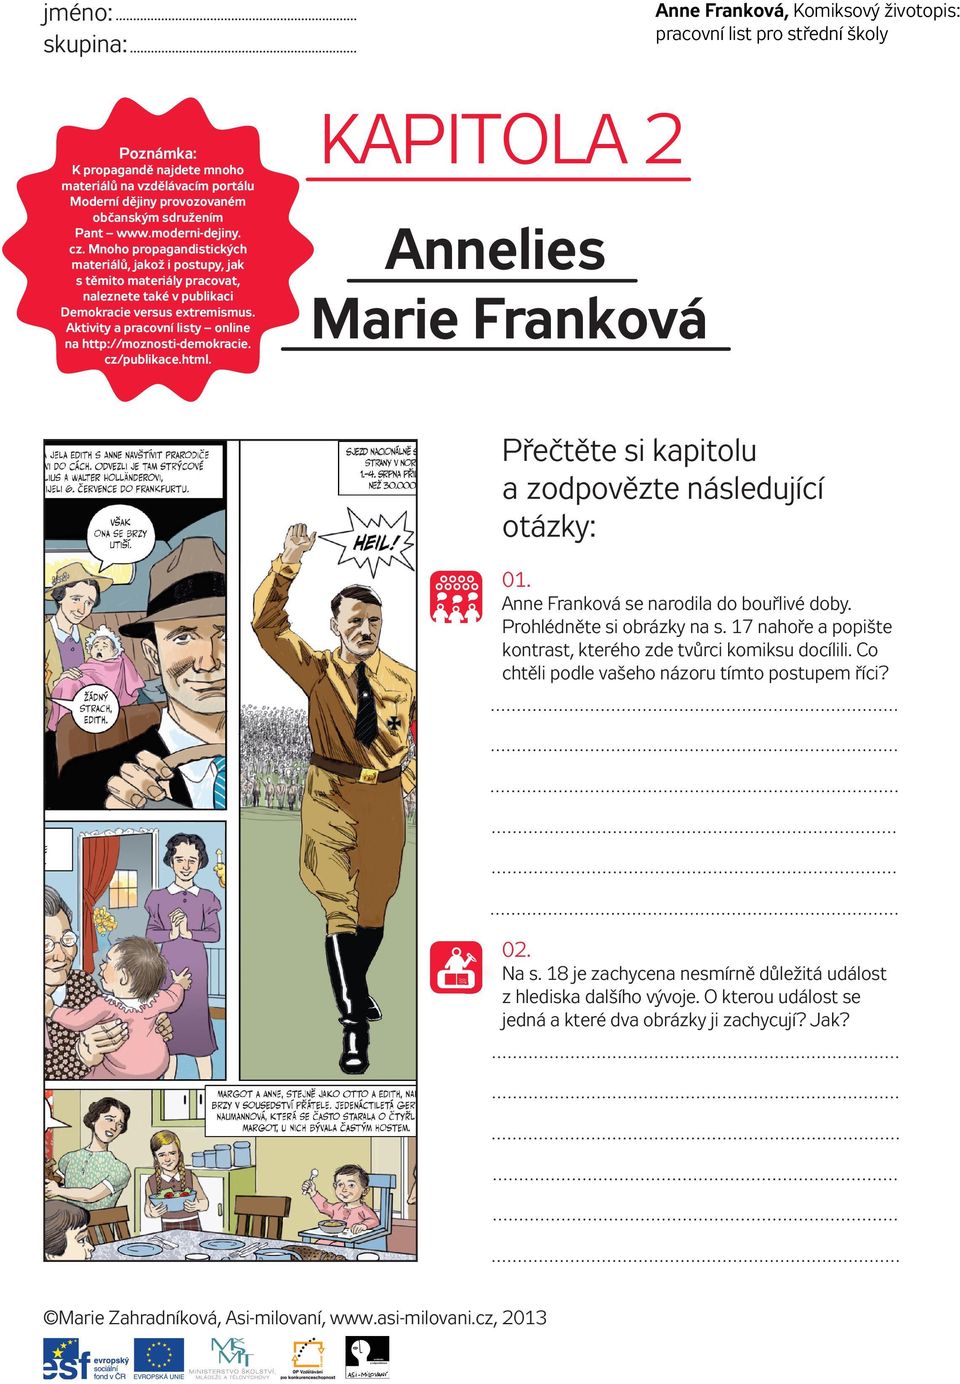 Aktivity a pracovní listy online na http://moznosti-demokracie. cz/publikace.html. KAPITOLA 2 Annelies Marie Franková Přečtěte si kapitolu a zodpovězte následující otázky: 01.